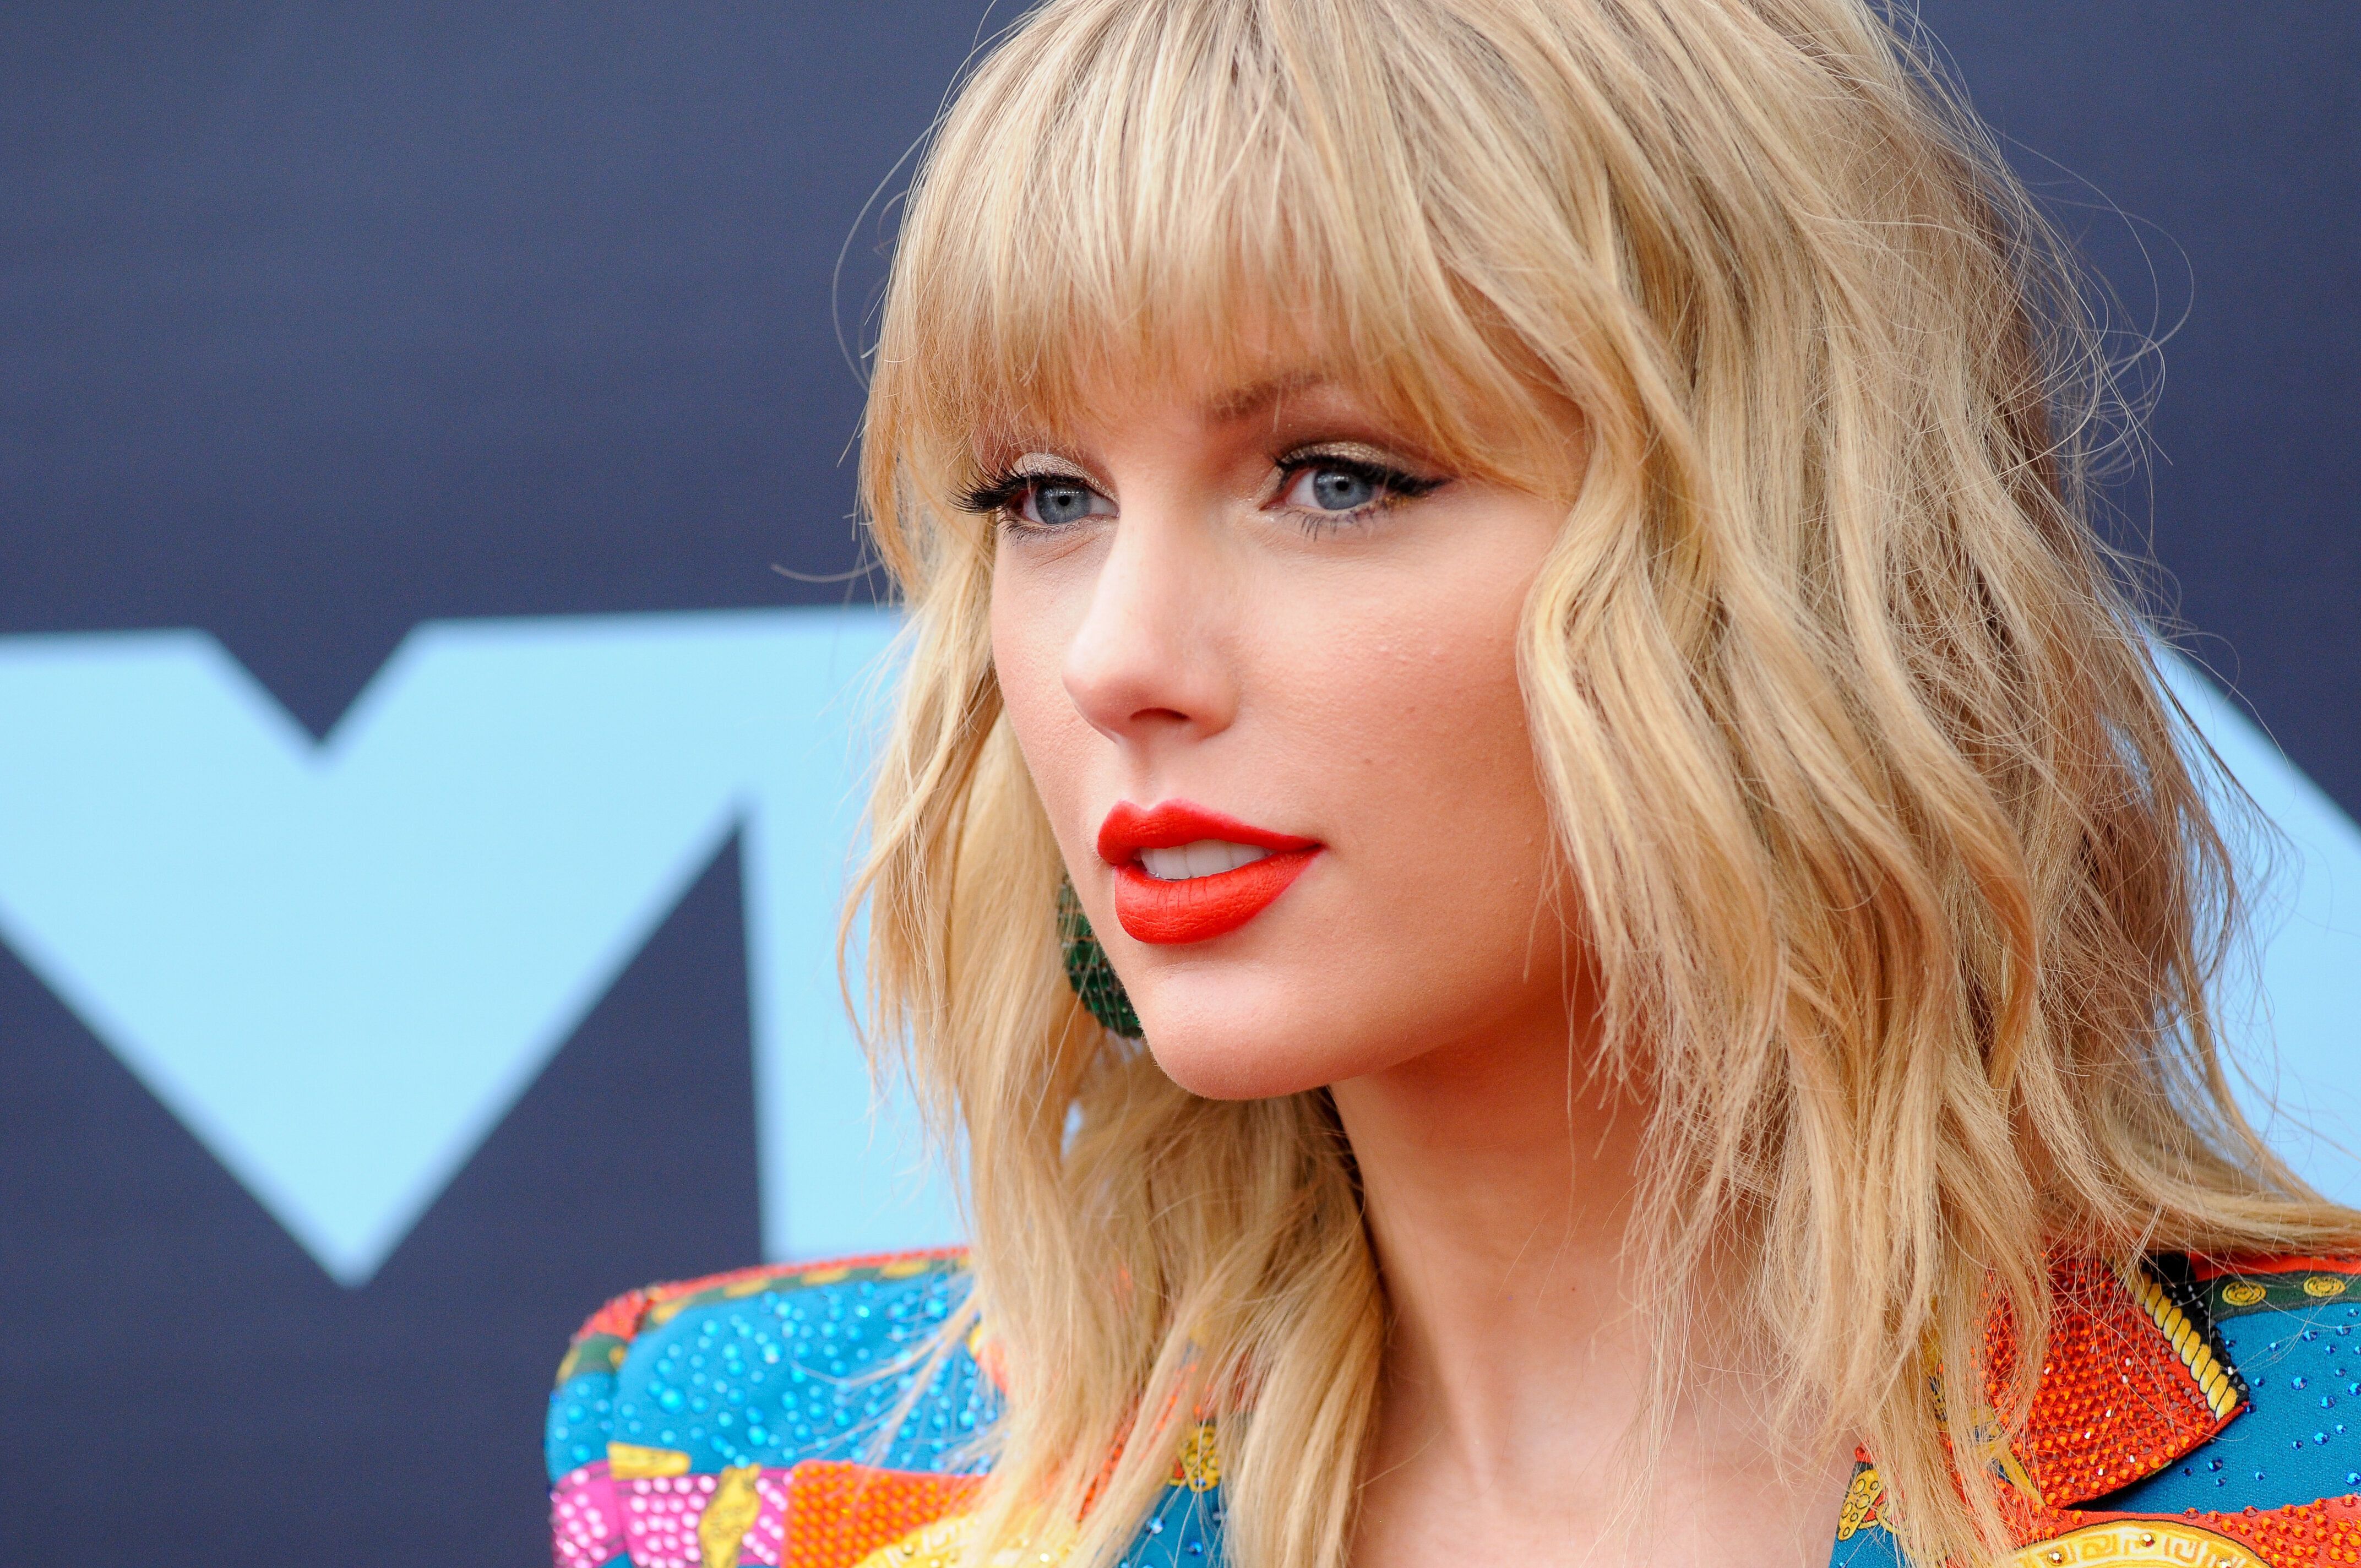 Taylor Swift at MTV Video Music Awards, 2019 4k Ultra HD Wallpaper